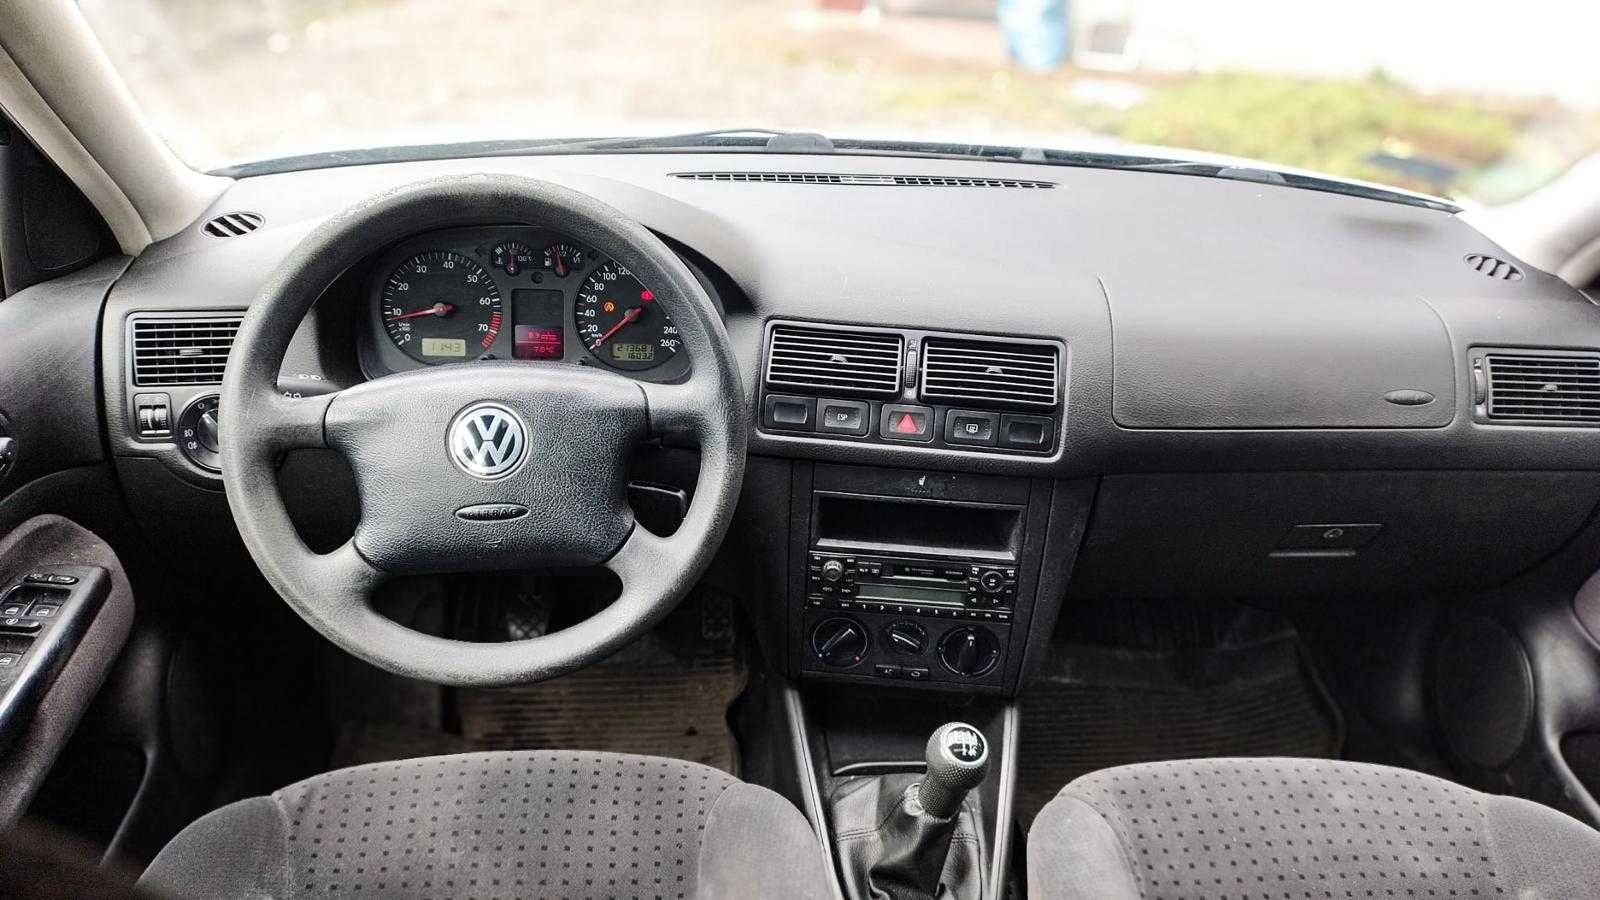 Volkswagen Golf/2000/1.6 Benzyna/Klimatyzacja/  Okazja!